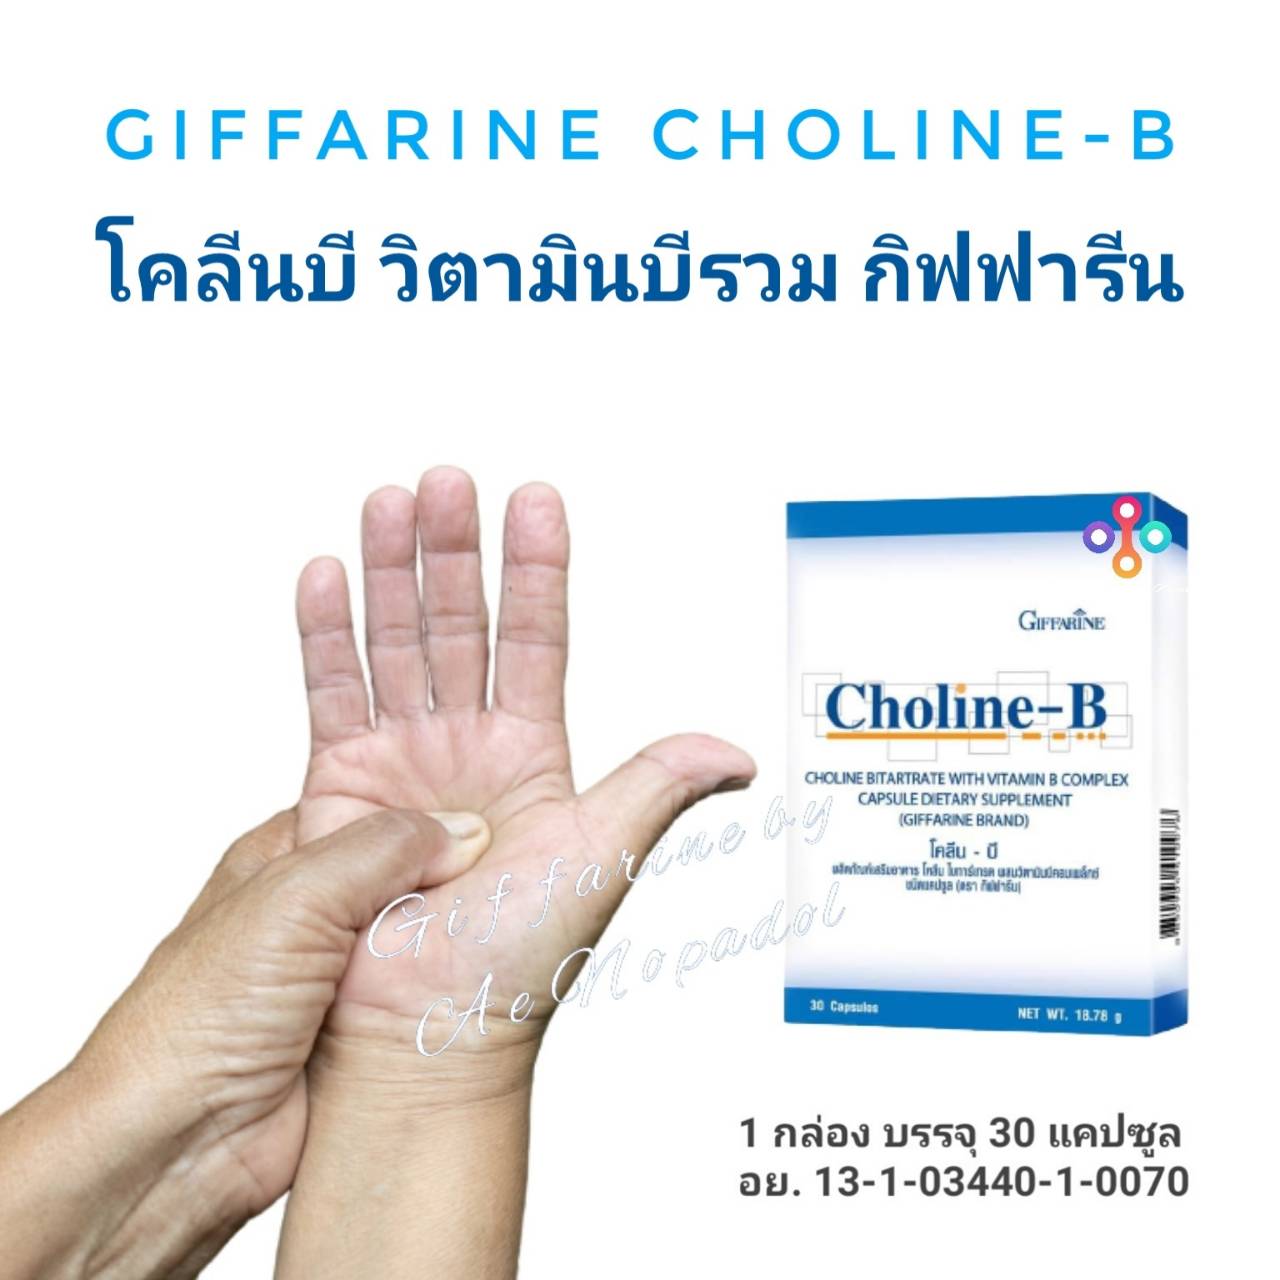 วิตามินบีรวม โคลีนบี กิฟฟารีน Giffarine Choline-B จำนวน 1 กล่อง  บรรจุ 30 แคปซูล อย. 13-1-0344-1-0070  กิฟฟารีนของแท้ 100% ส่งฟรี !!